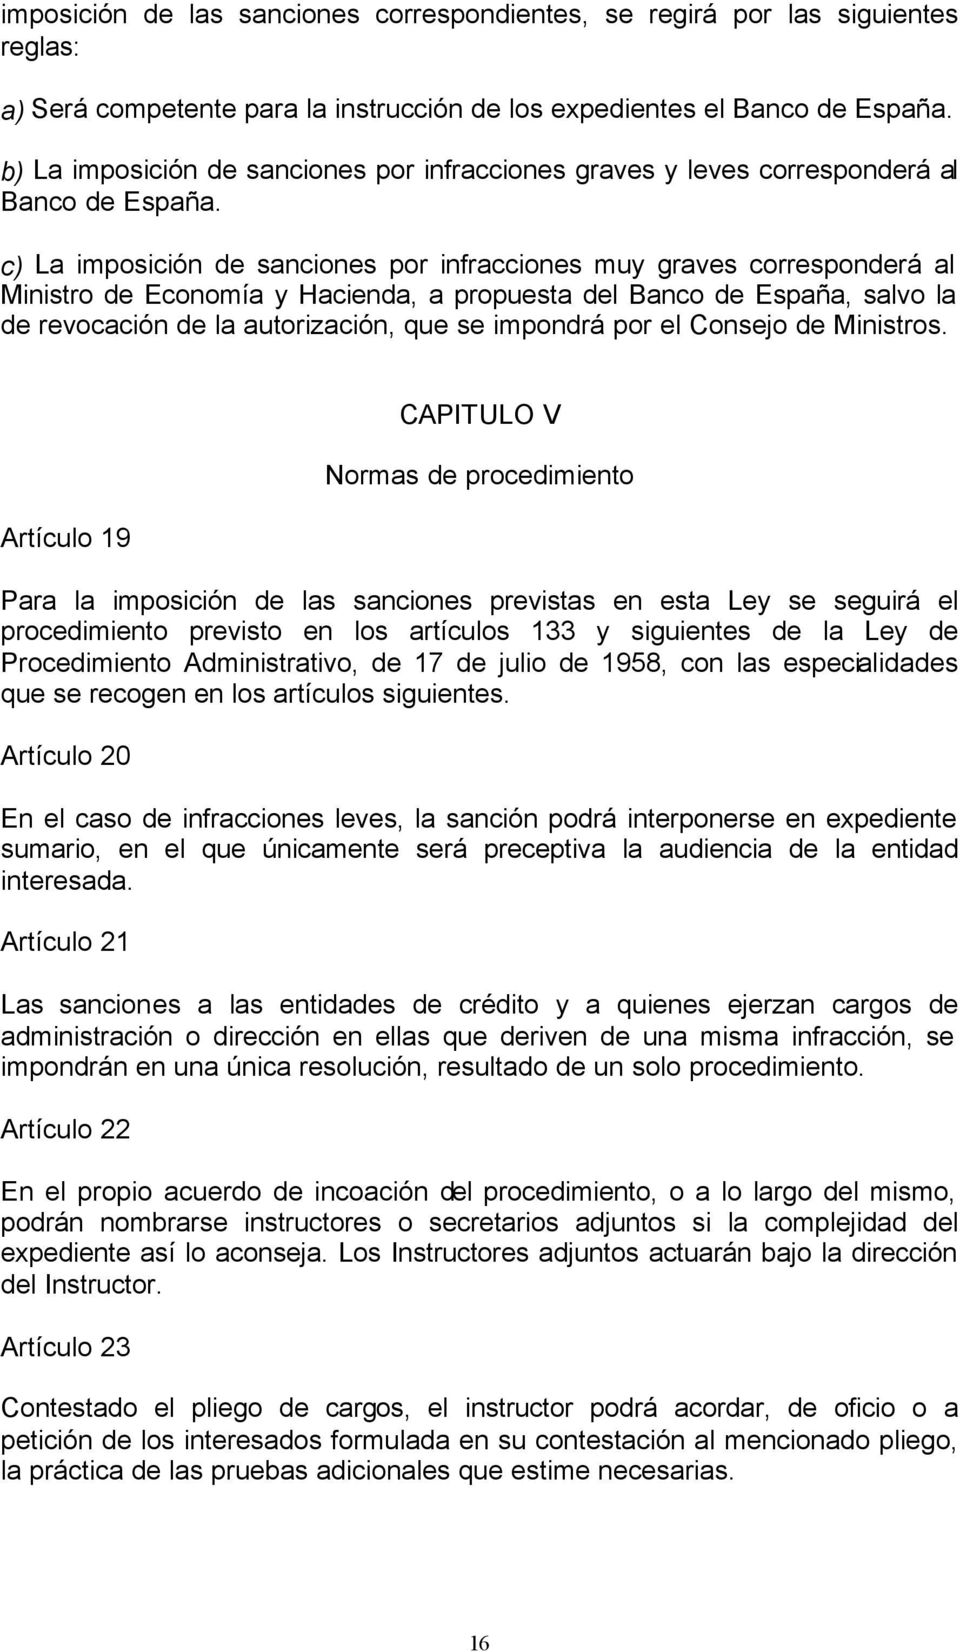 c) La imposición de sanciones por infracciones muy graves corresponderá al Ministro de Economía y Hacienda, a propuesta del Banco de España, salvo la de revocación de la autorización, que se impondrá